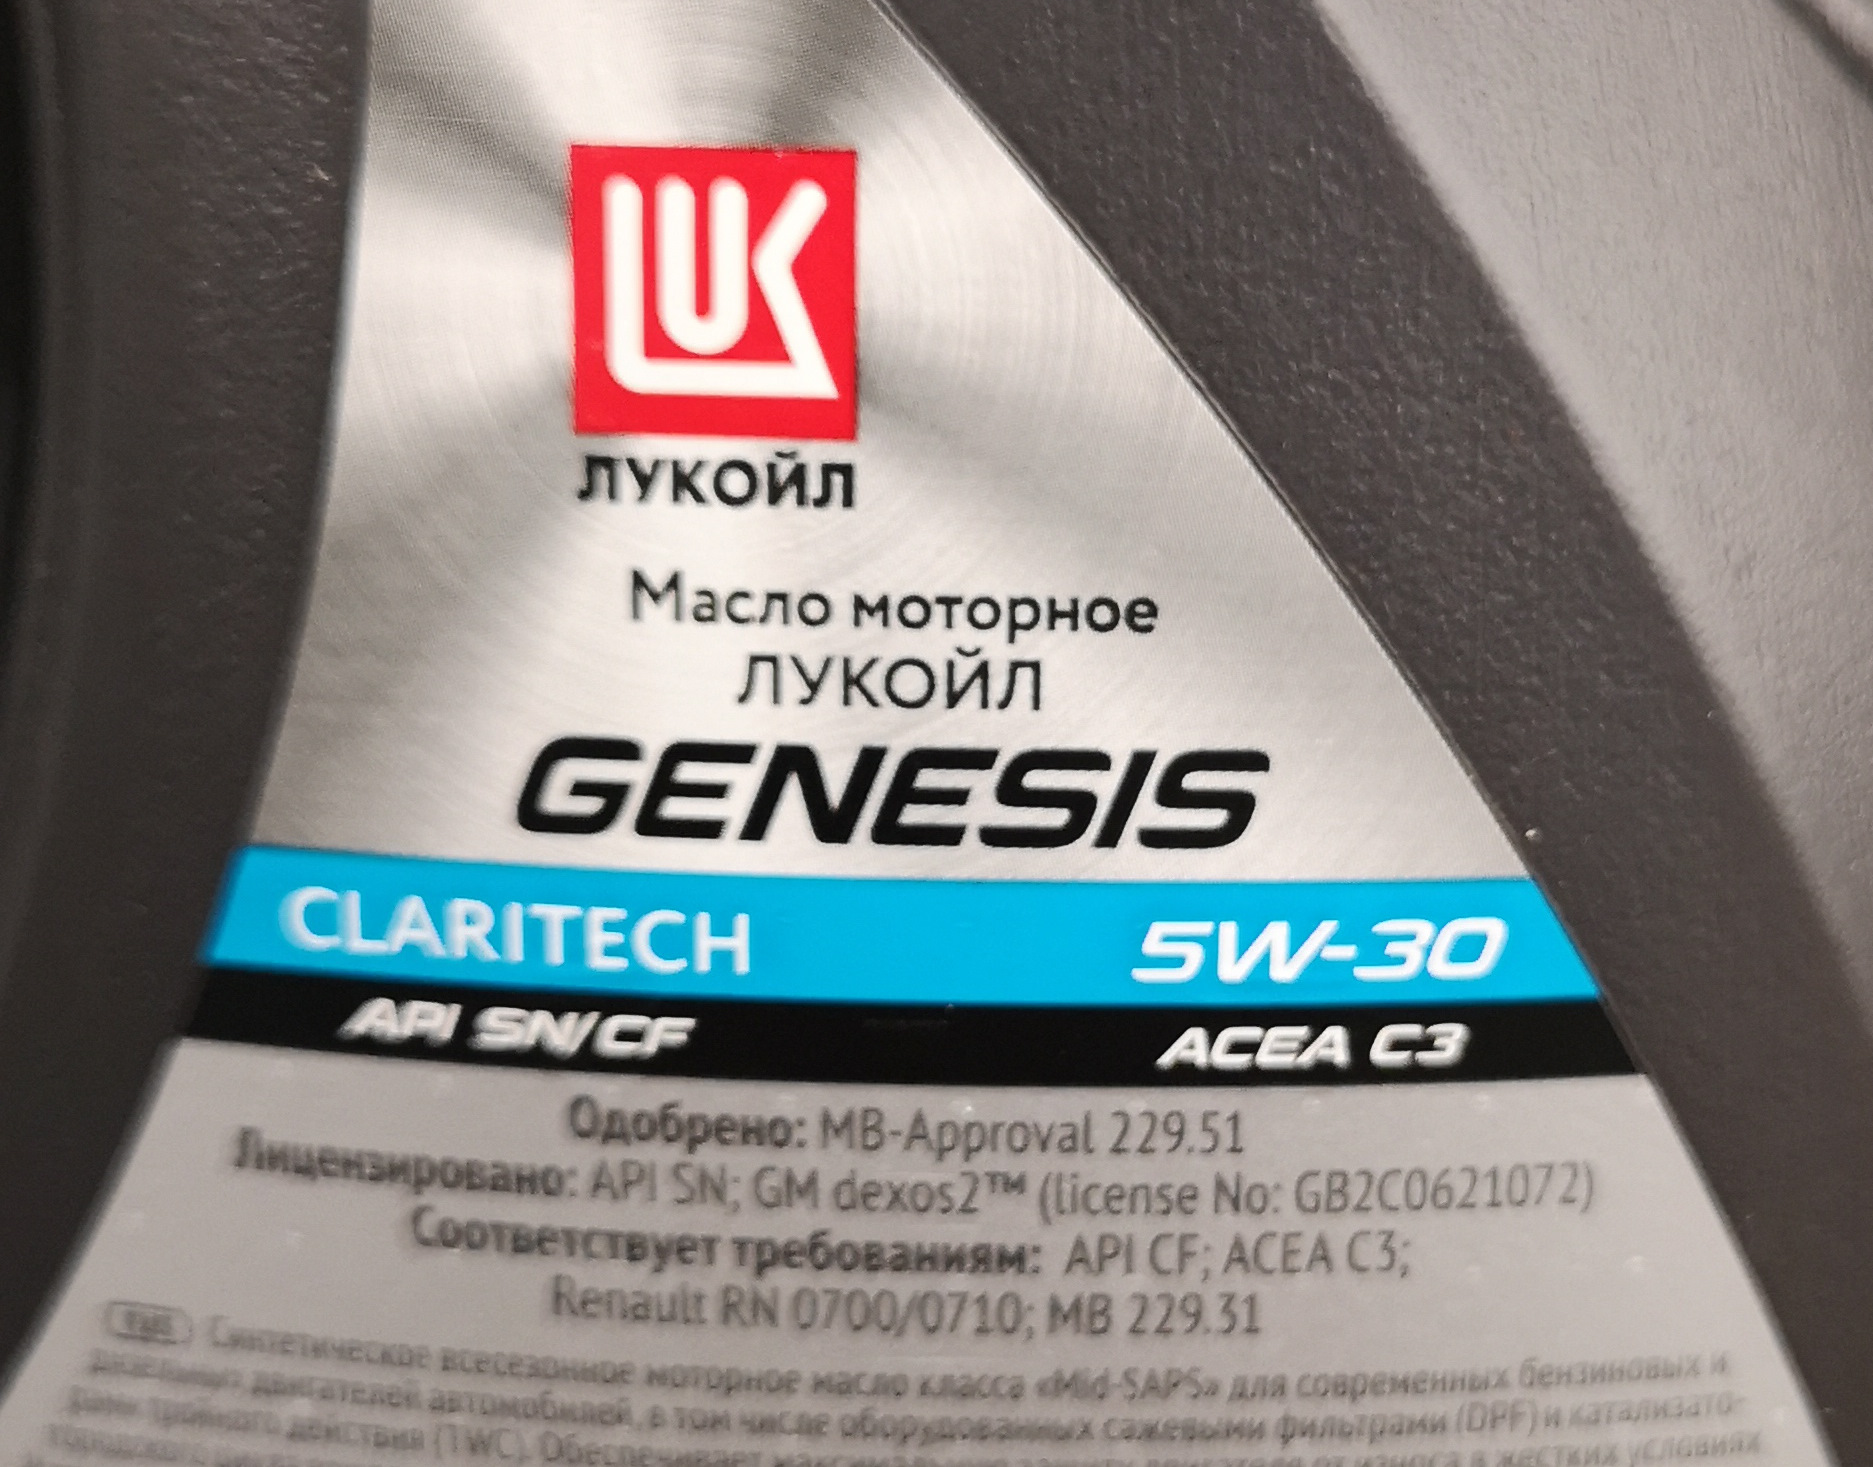 Как проверить масло лукойл генезис на подлинность. Lukoil Genesis Claritech 5w-30 dexos2. Масло Лукойл Генезис Dexos 2. Лукойл Генезис dexos2 допуск. Стойка Лукойл Генезис.